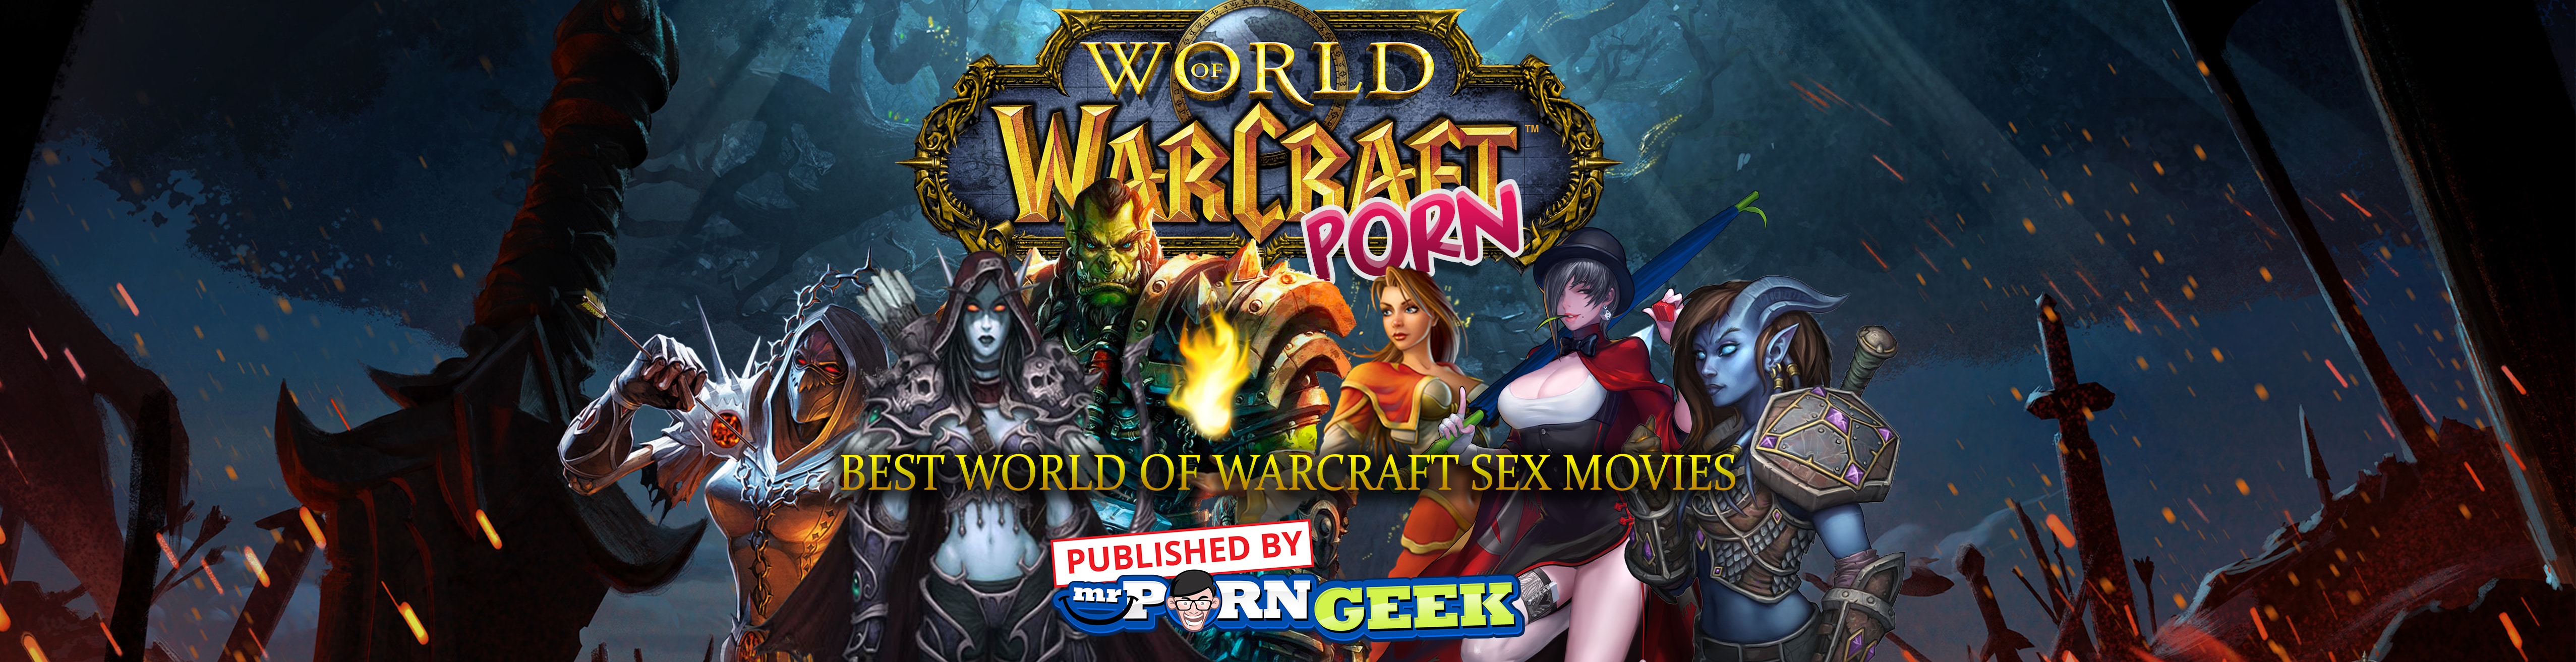 World Of Warcraft Porn Games - WoW Porn: Best World Of Warcraft Sex Movies â€“ Mr. Porn Geek